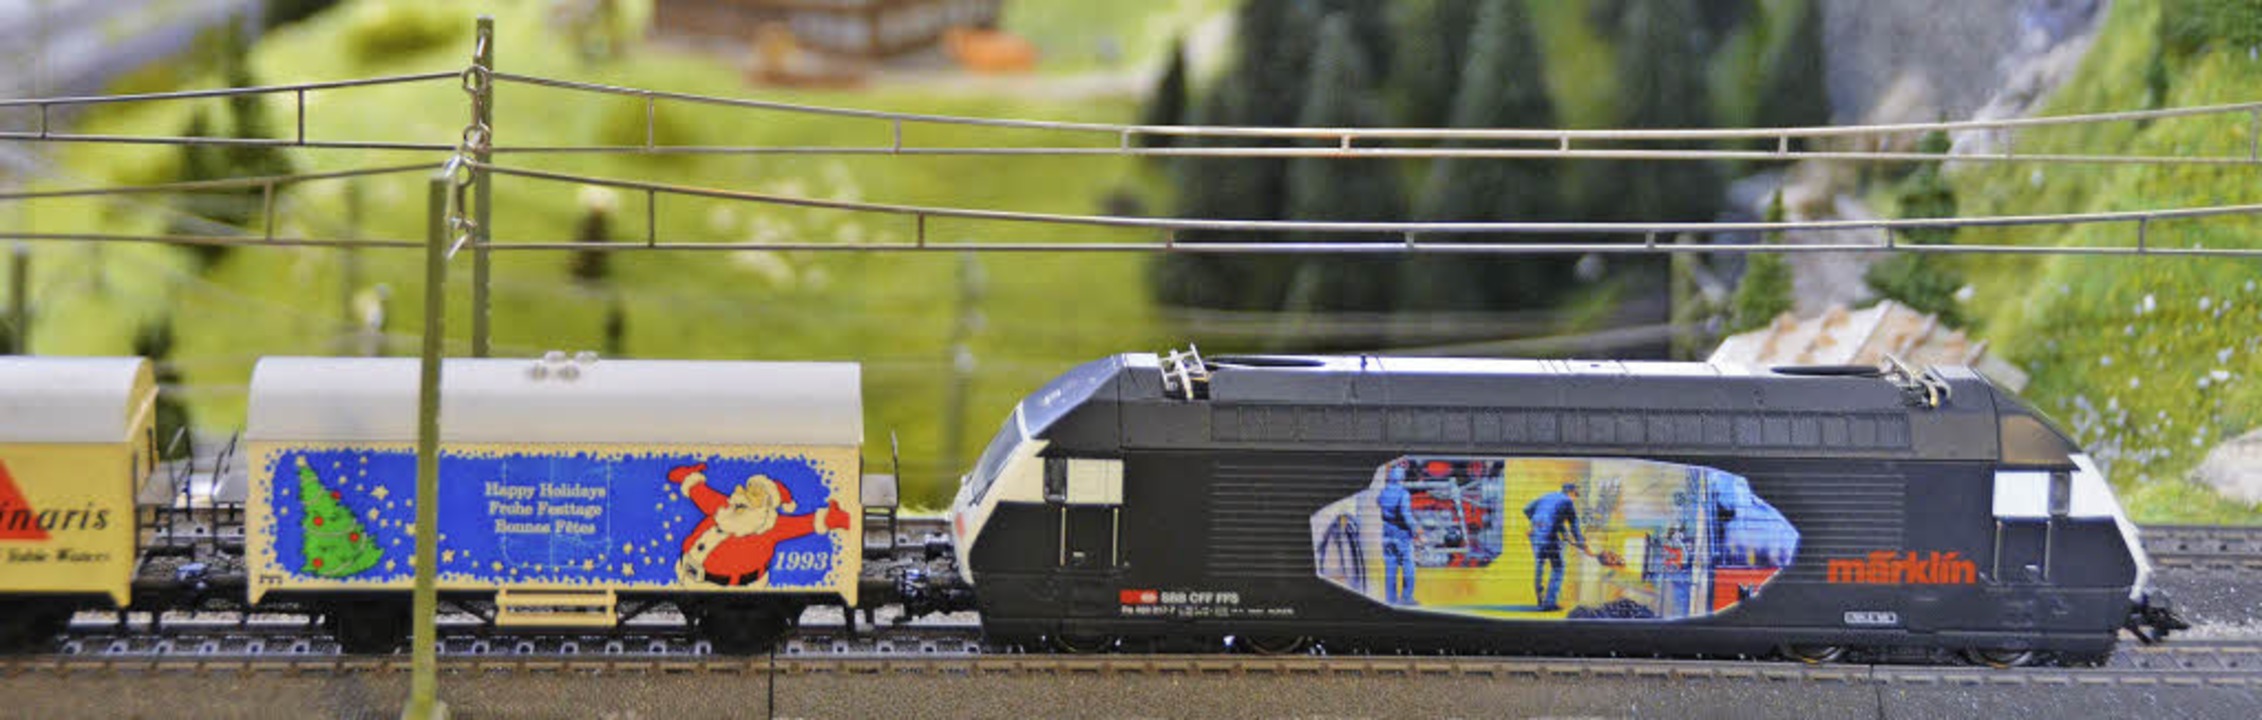 Zugkraft garantiert: eine Lokomotive im Märklin-Outfit  | Foto: Stefan Zahler